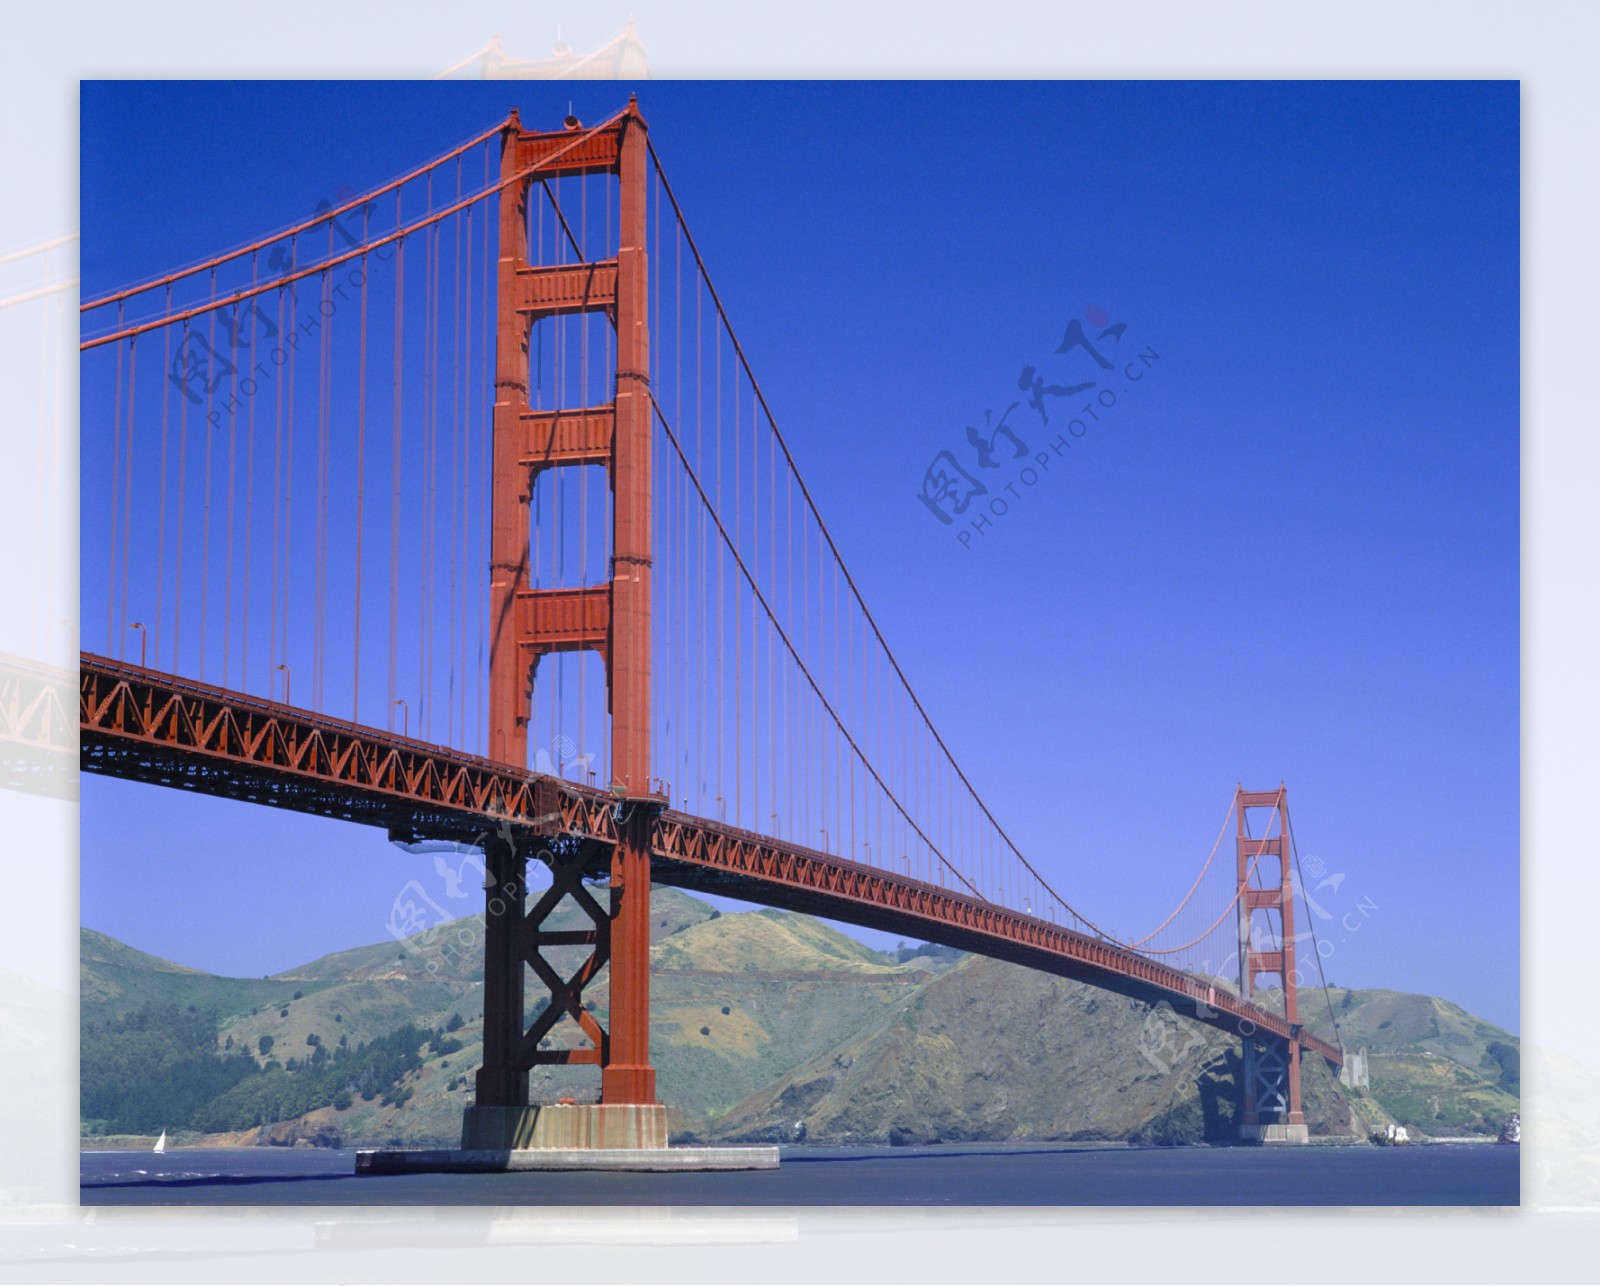 旧金山大桥摄影